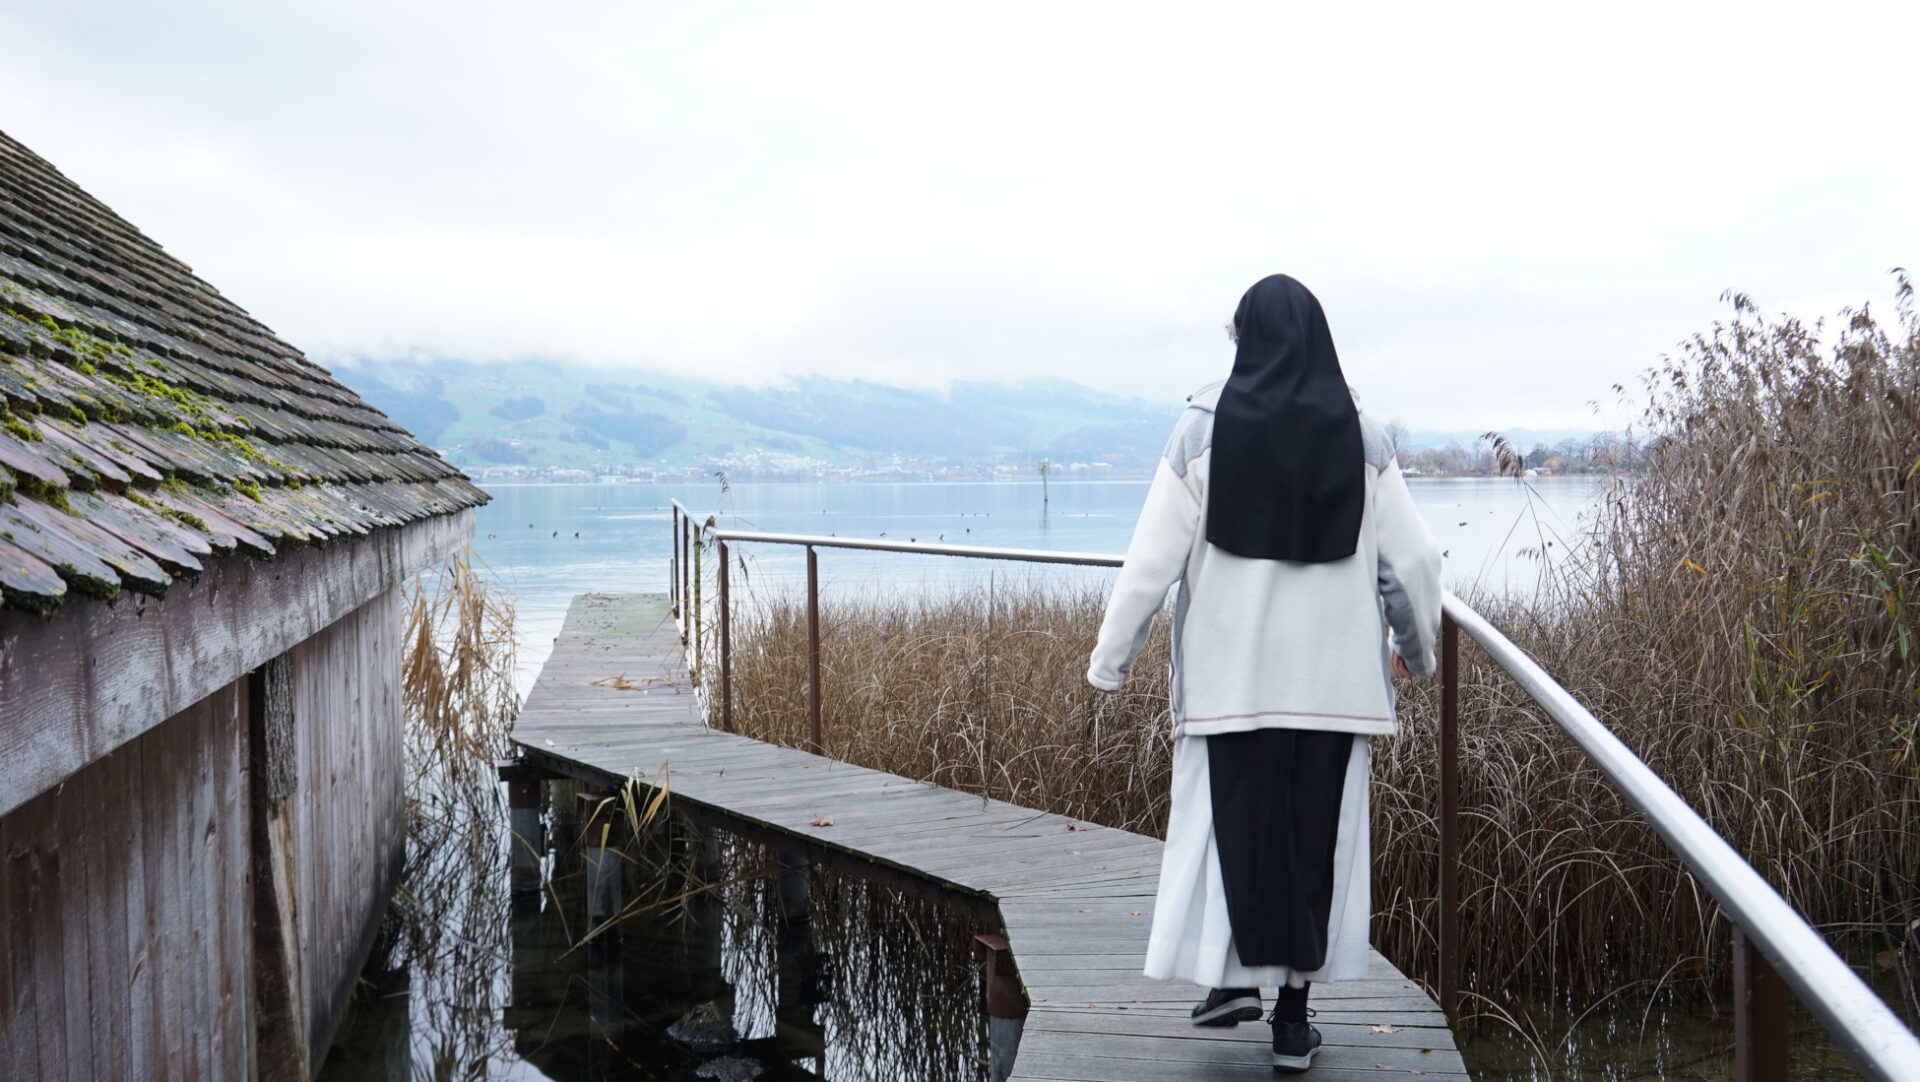 Schwester Monika Thumm, Äbtissin des Klosters Mariazell-Wurmsbach, am Ufer des Zürichsees.